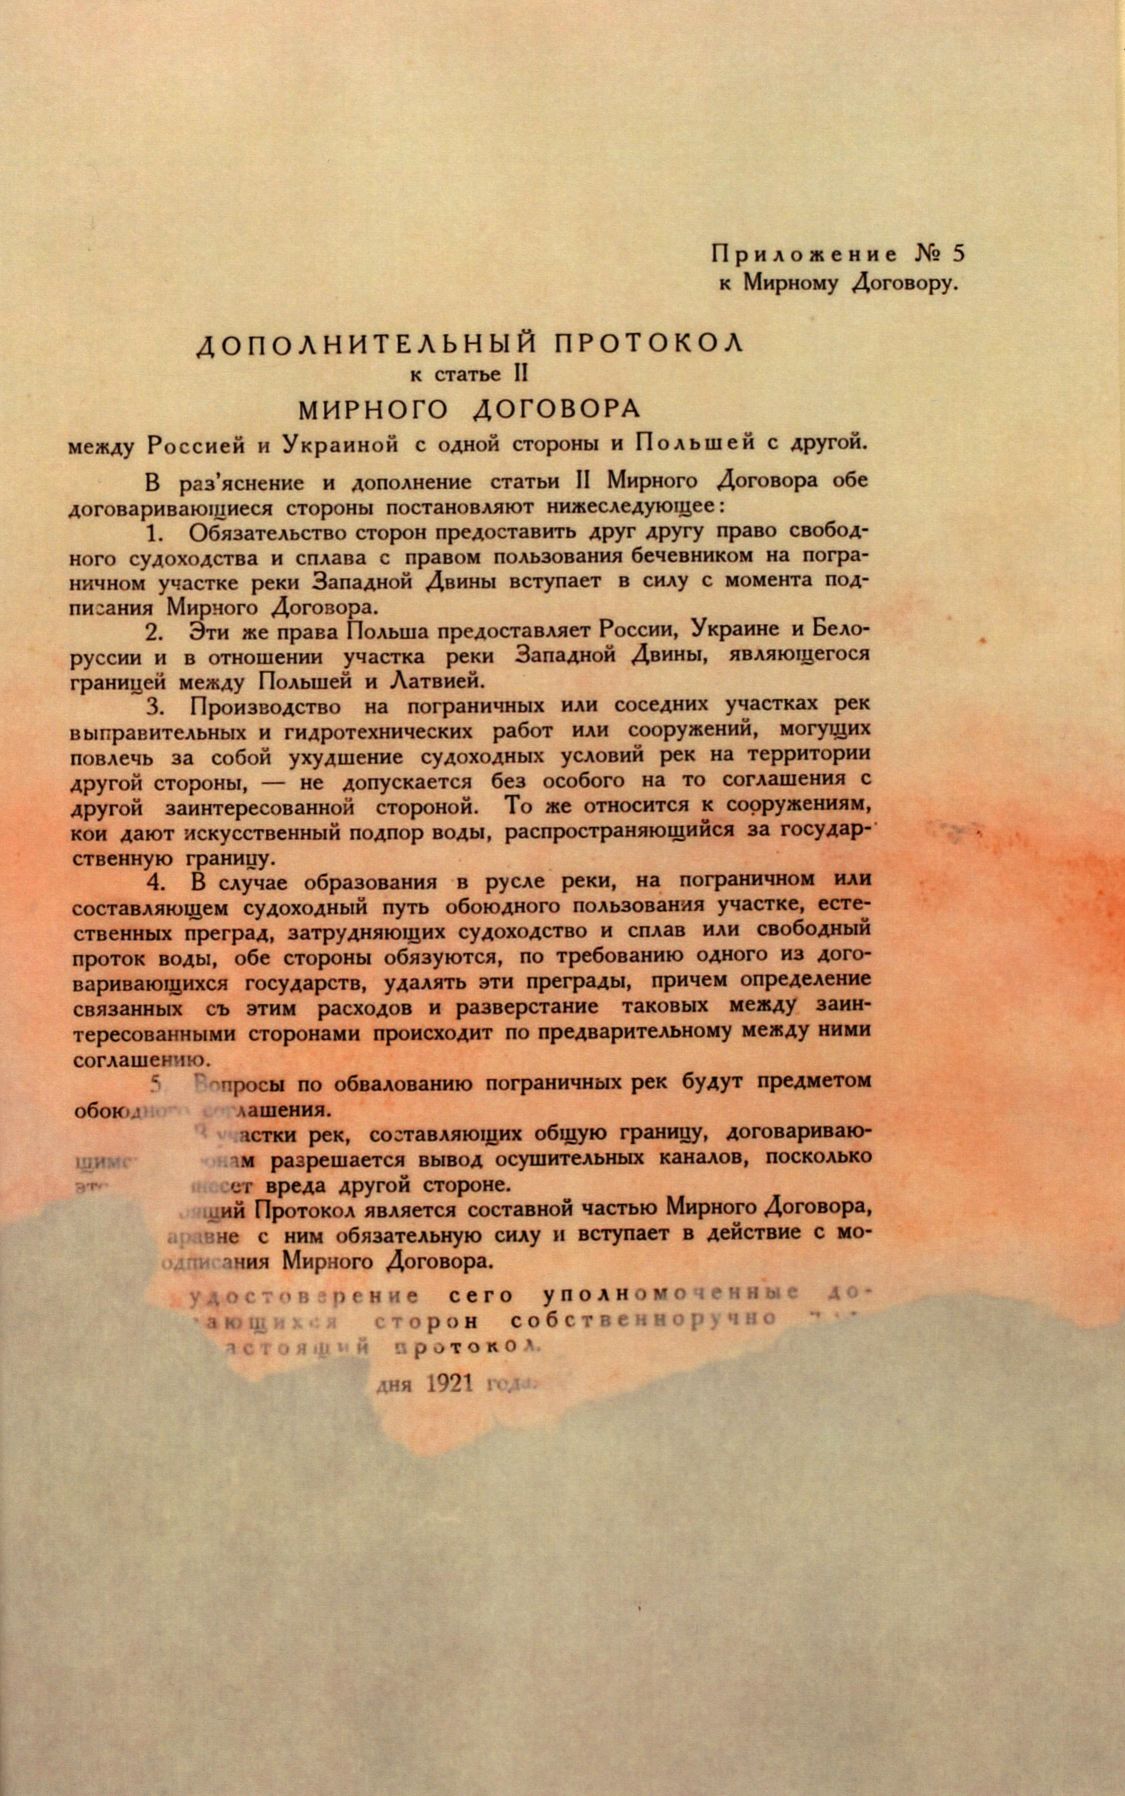 Traktat Pokoju między Polską a Rosją i Ukrainą podpisany w Rydze dnia 18 marca 1921 roku, s. 96, MSZ, sygn. 6739.